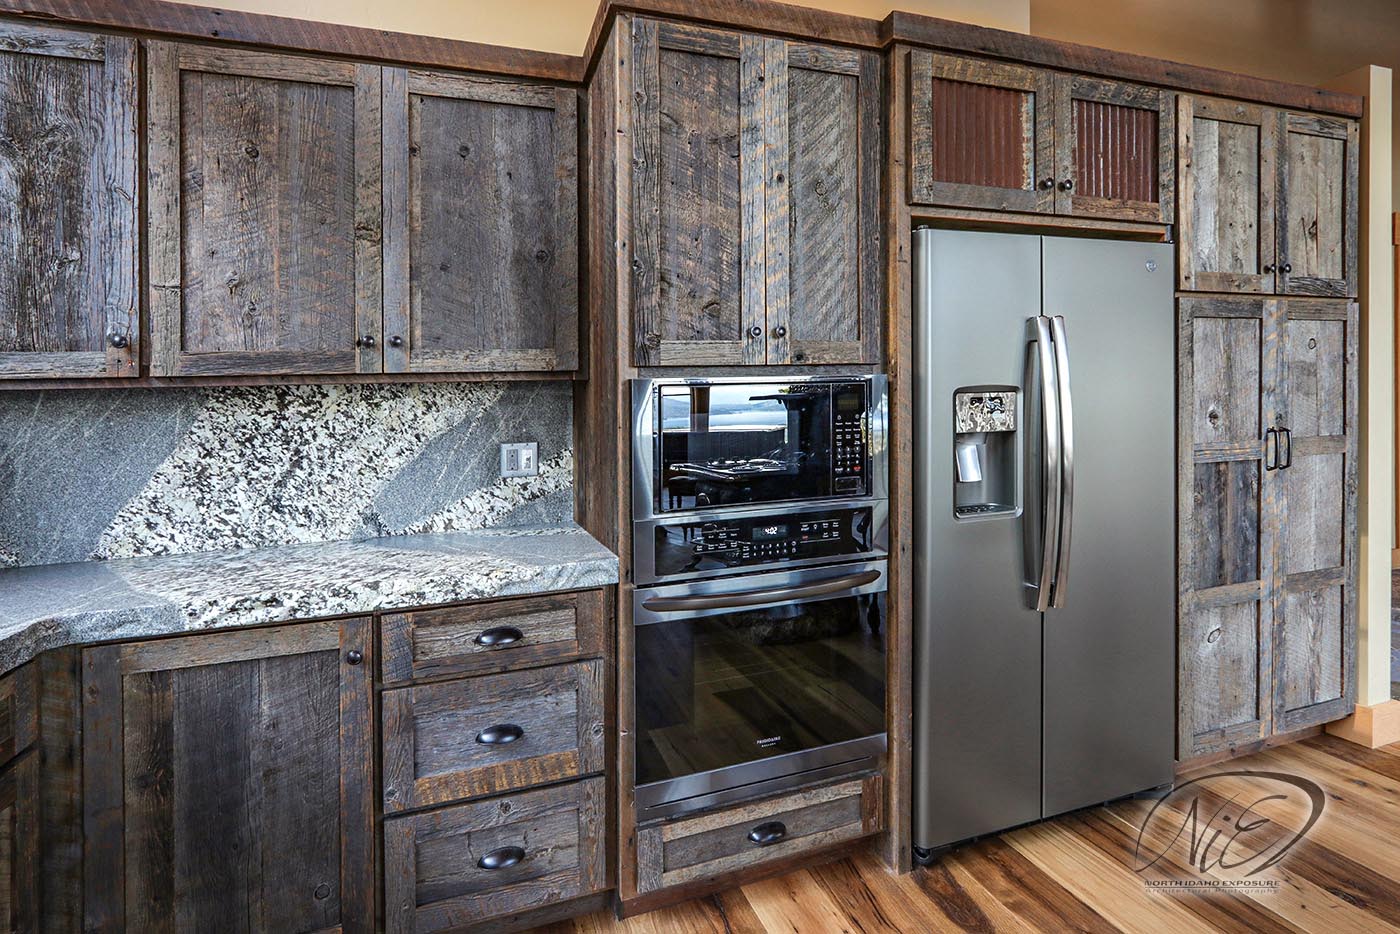 NIE - Architectural - Kitchen Cabinets